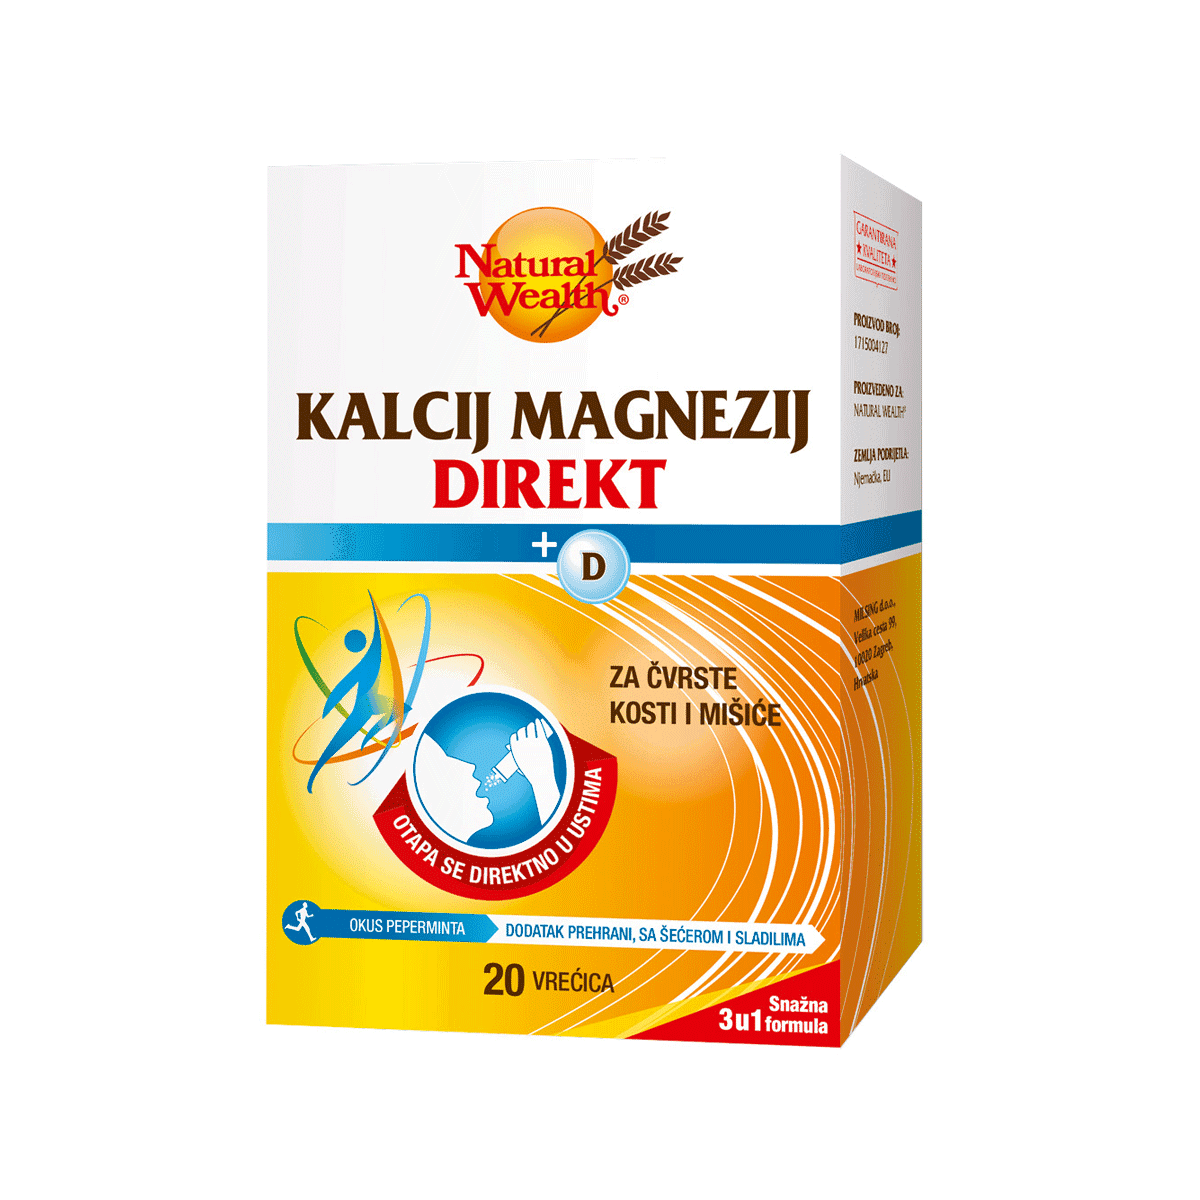 Natural Wealth Kalcij Magnezij Direkt + D Vitamin 20 Vrećica Jedna Vrećica Na Dan